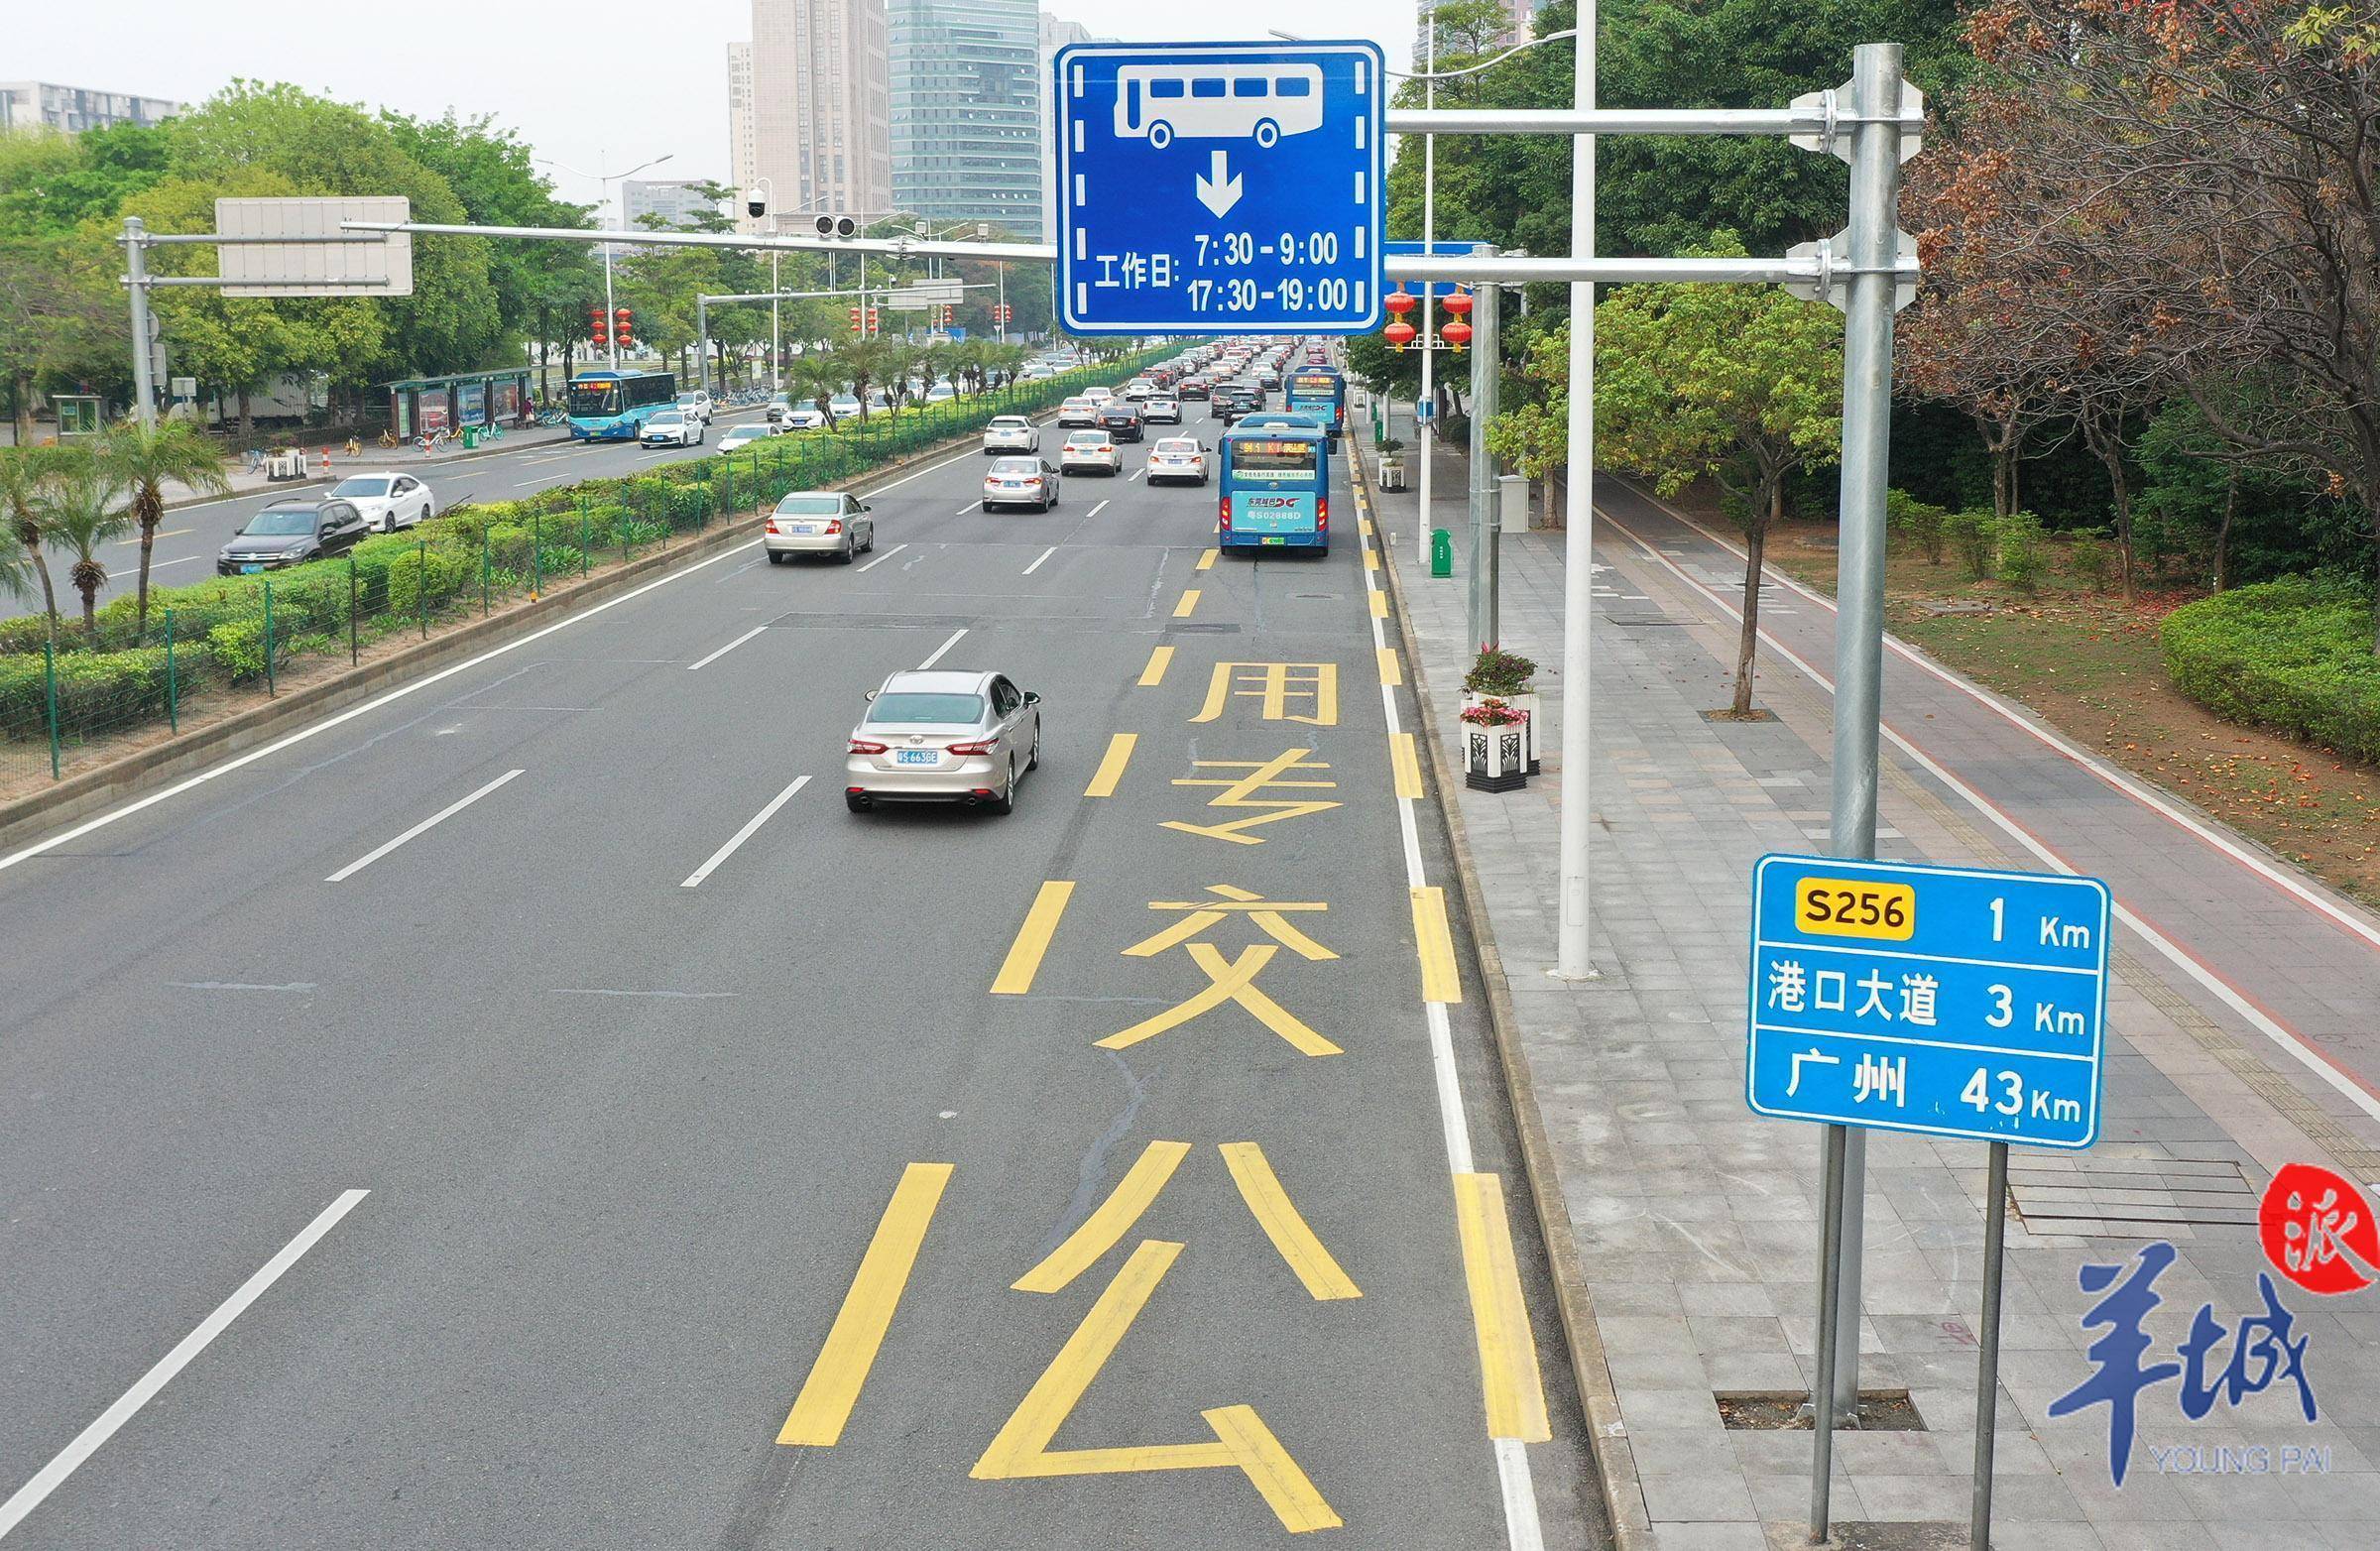 东莞公交专用道启用半月公交车通行效率明显提升